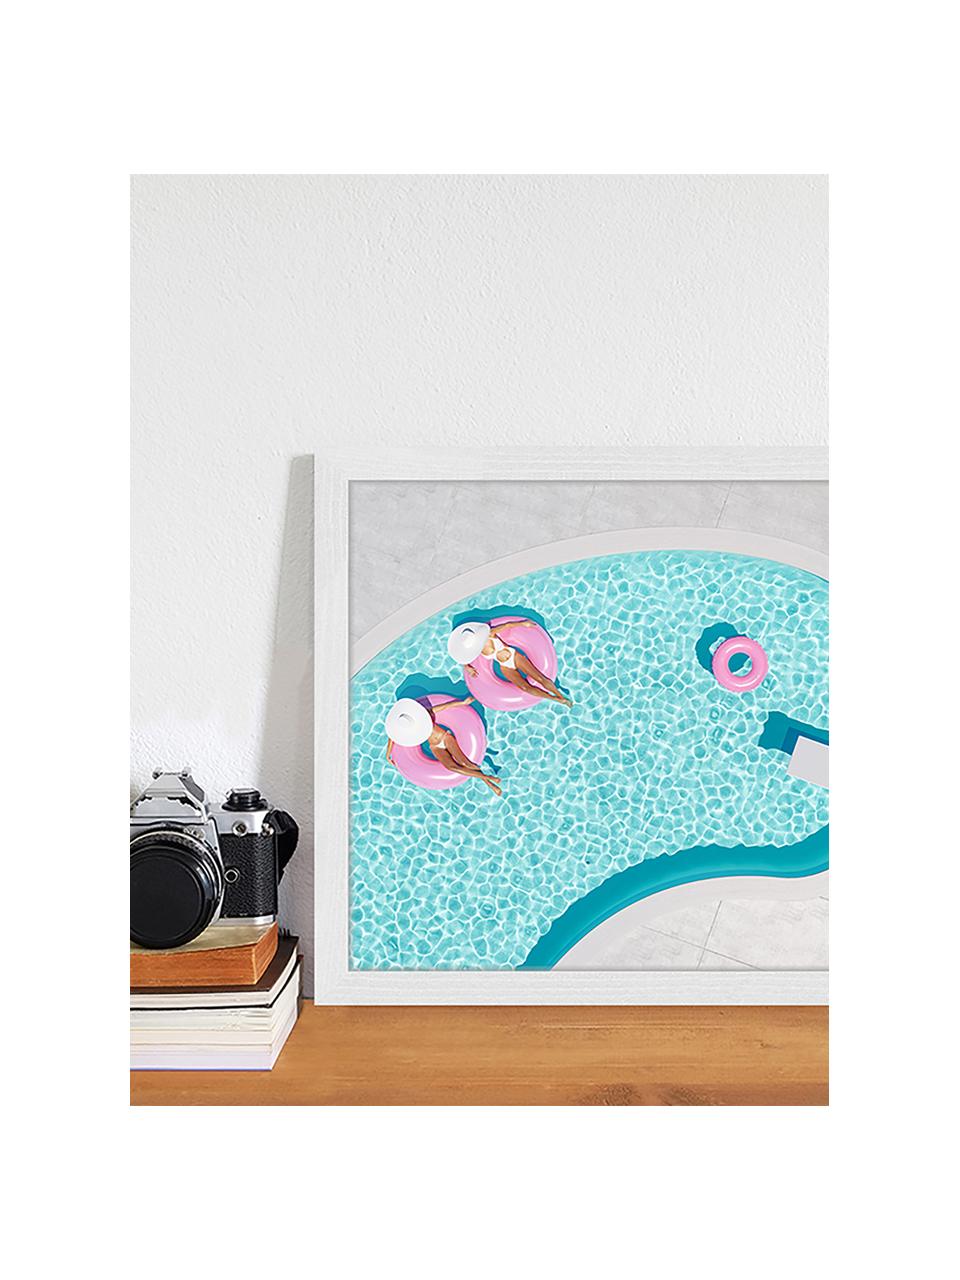 Gerahmter Digitaldruck Pink Vacation, Bild: Digitaldruck auf Papier, , Rahmen: Holz, lackiert, Front: Plexiglas, Mehrfarbig, 53 x 43 cm